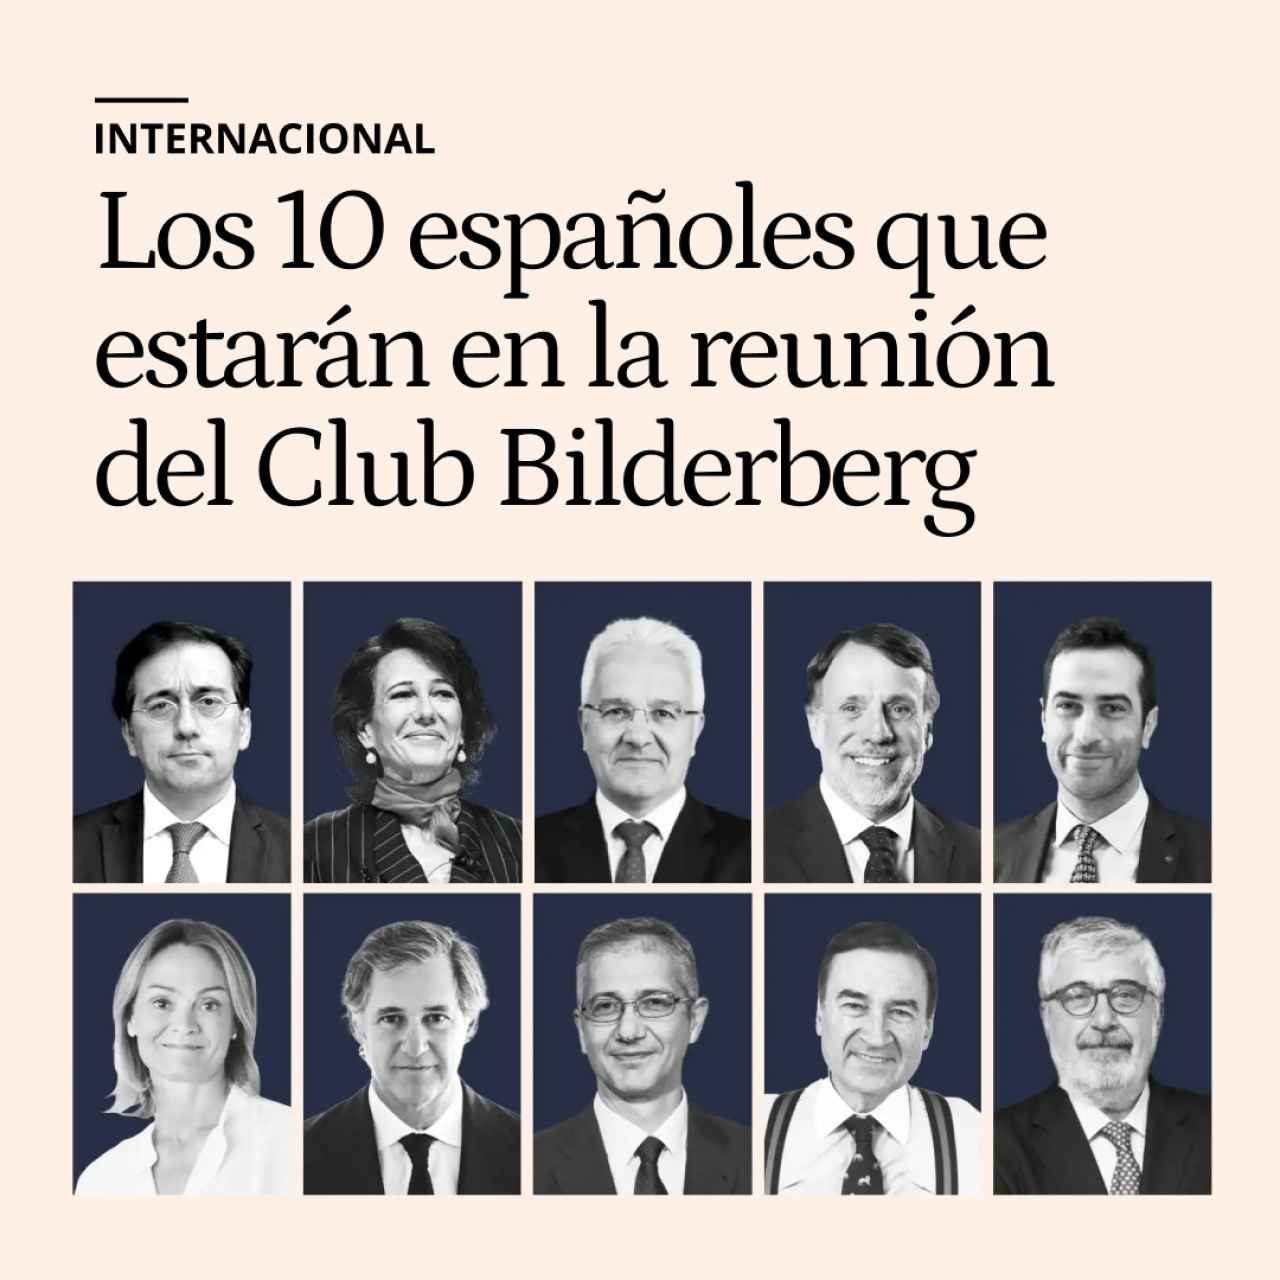 El Club Bilderberg se reúne este fin de semana en Madrid: estos son los 10 españoles que participan